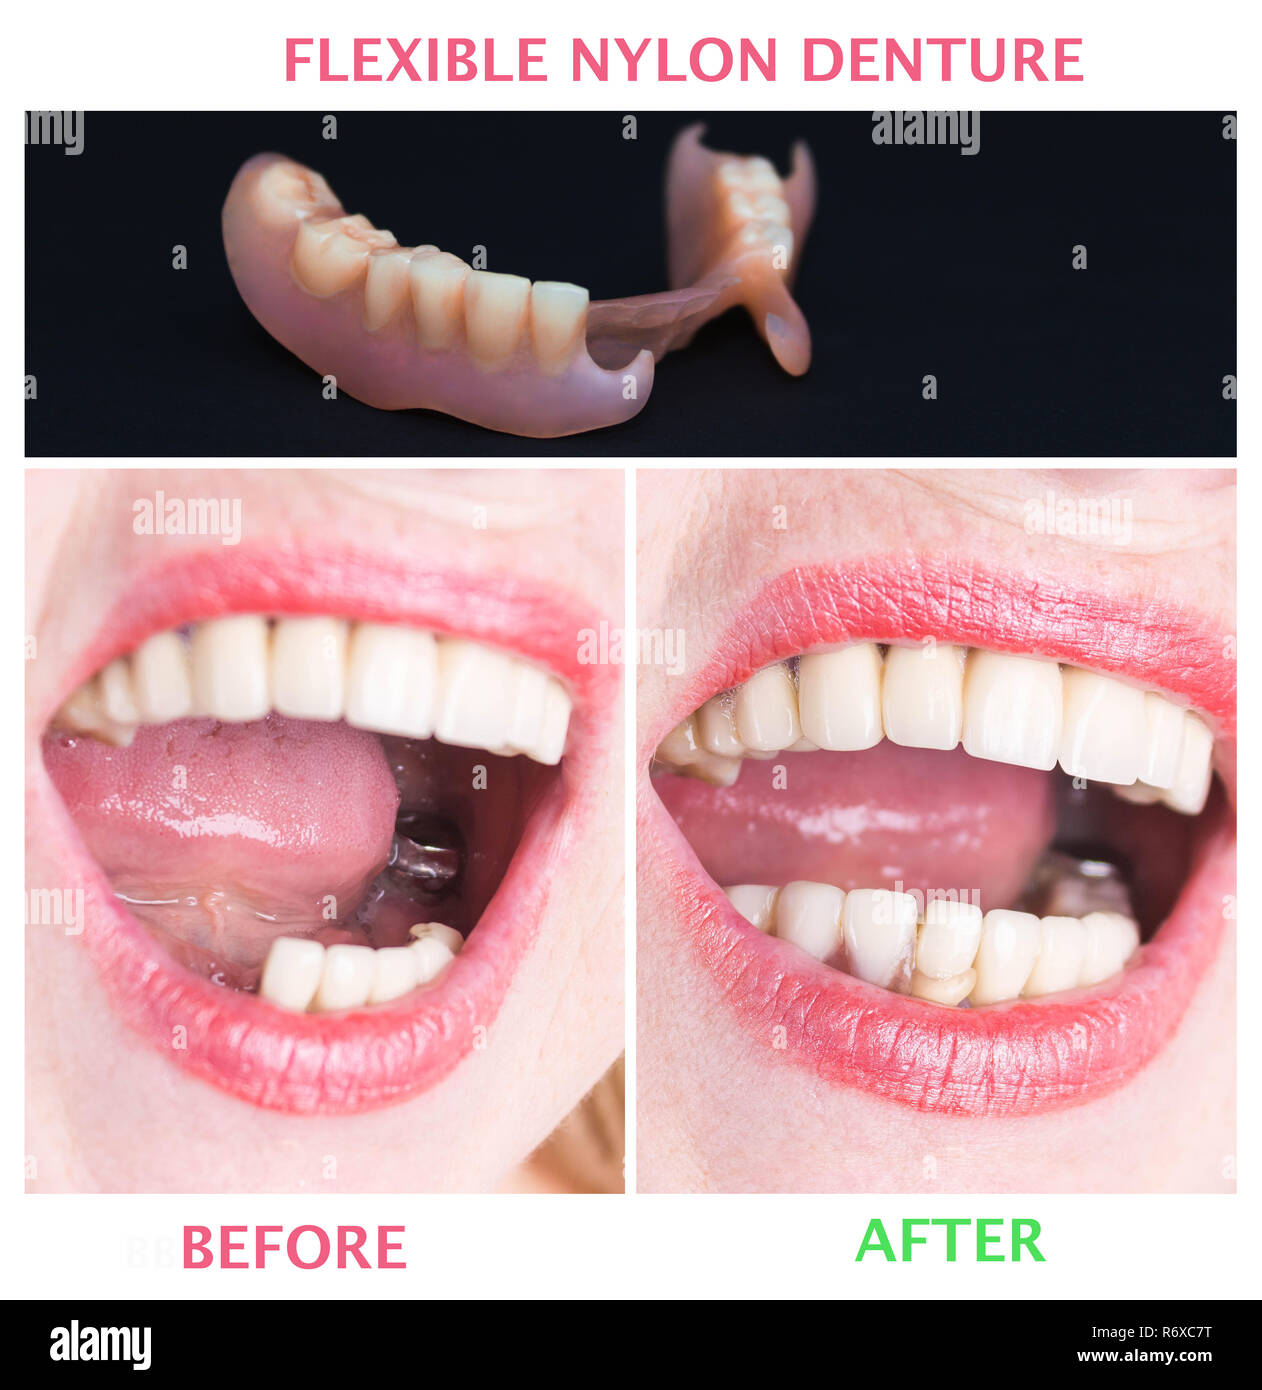 Avec la réhabilitation dentaire dentier inférieur en nylon souple, avant et après le traitement. Dentiers amovibles souples, dépourvue de nylon, exempt de monomère hypoallergénique Banque D'Images